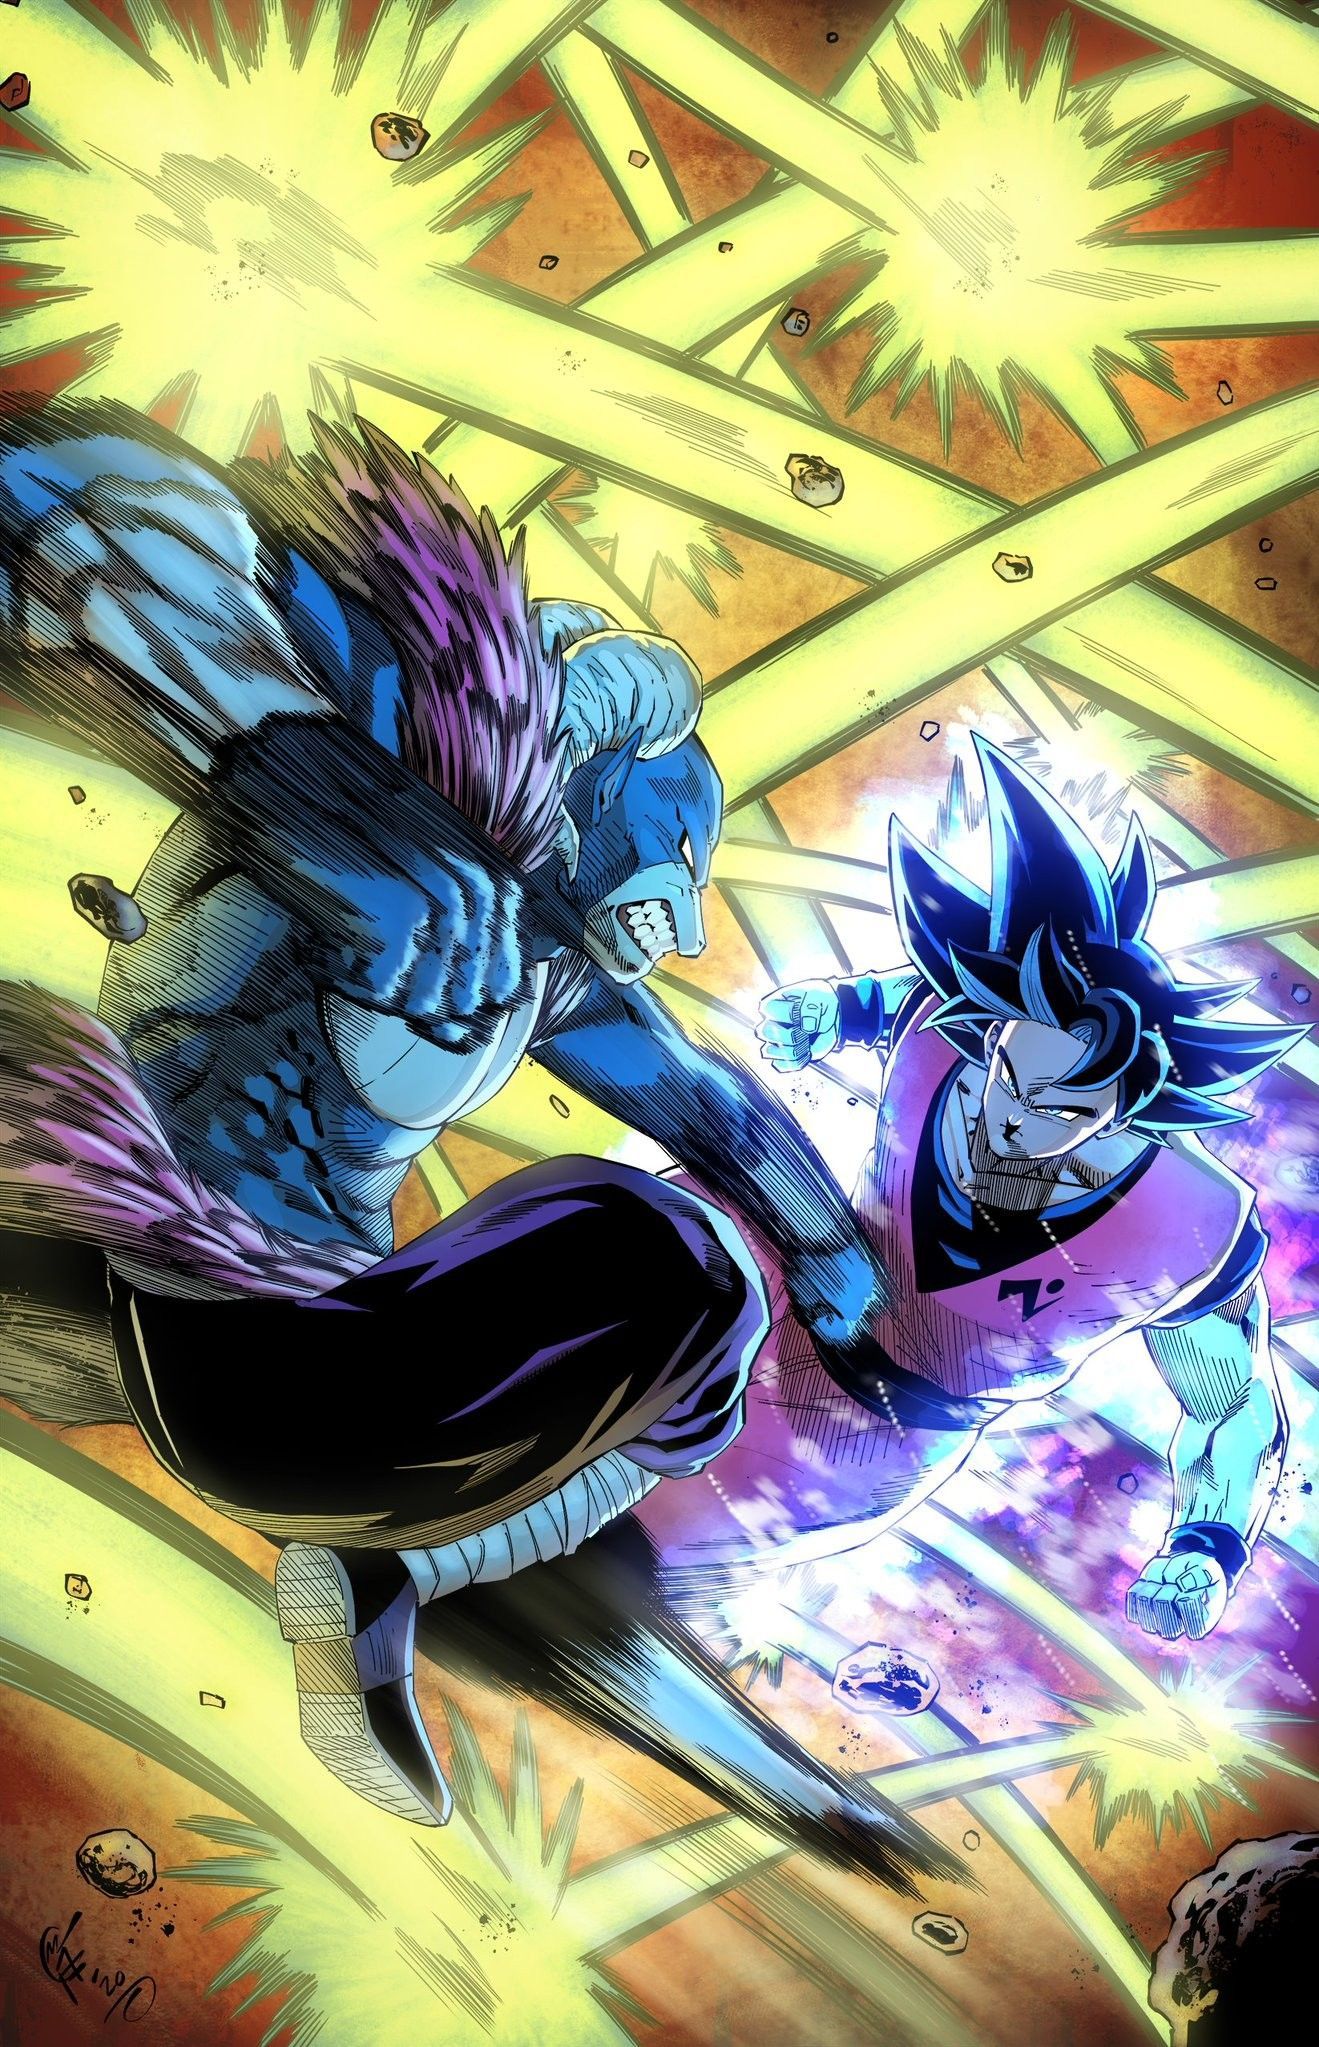 Goku vs moro By: someGFguy. Anime dragon ball super, Dragon ball super manga, Dragon ball artwork